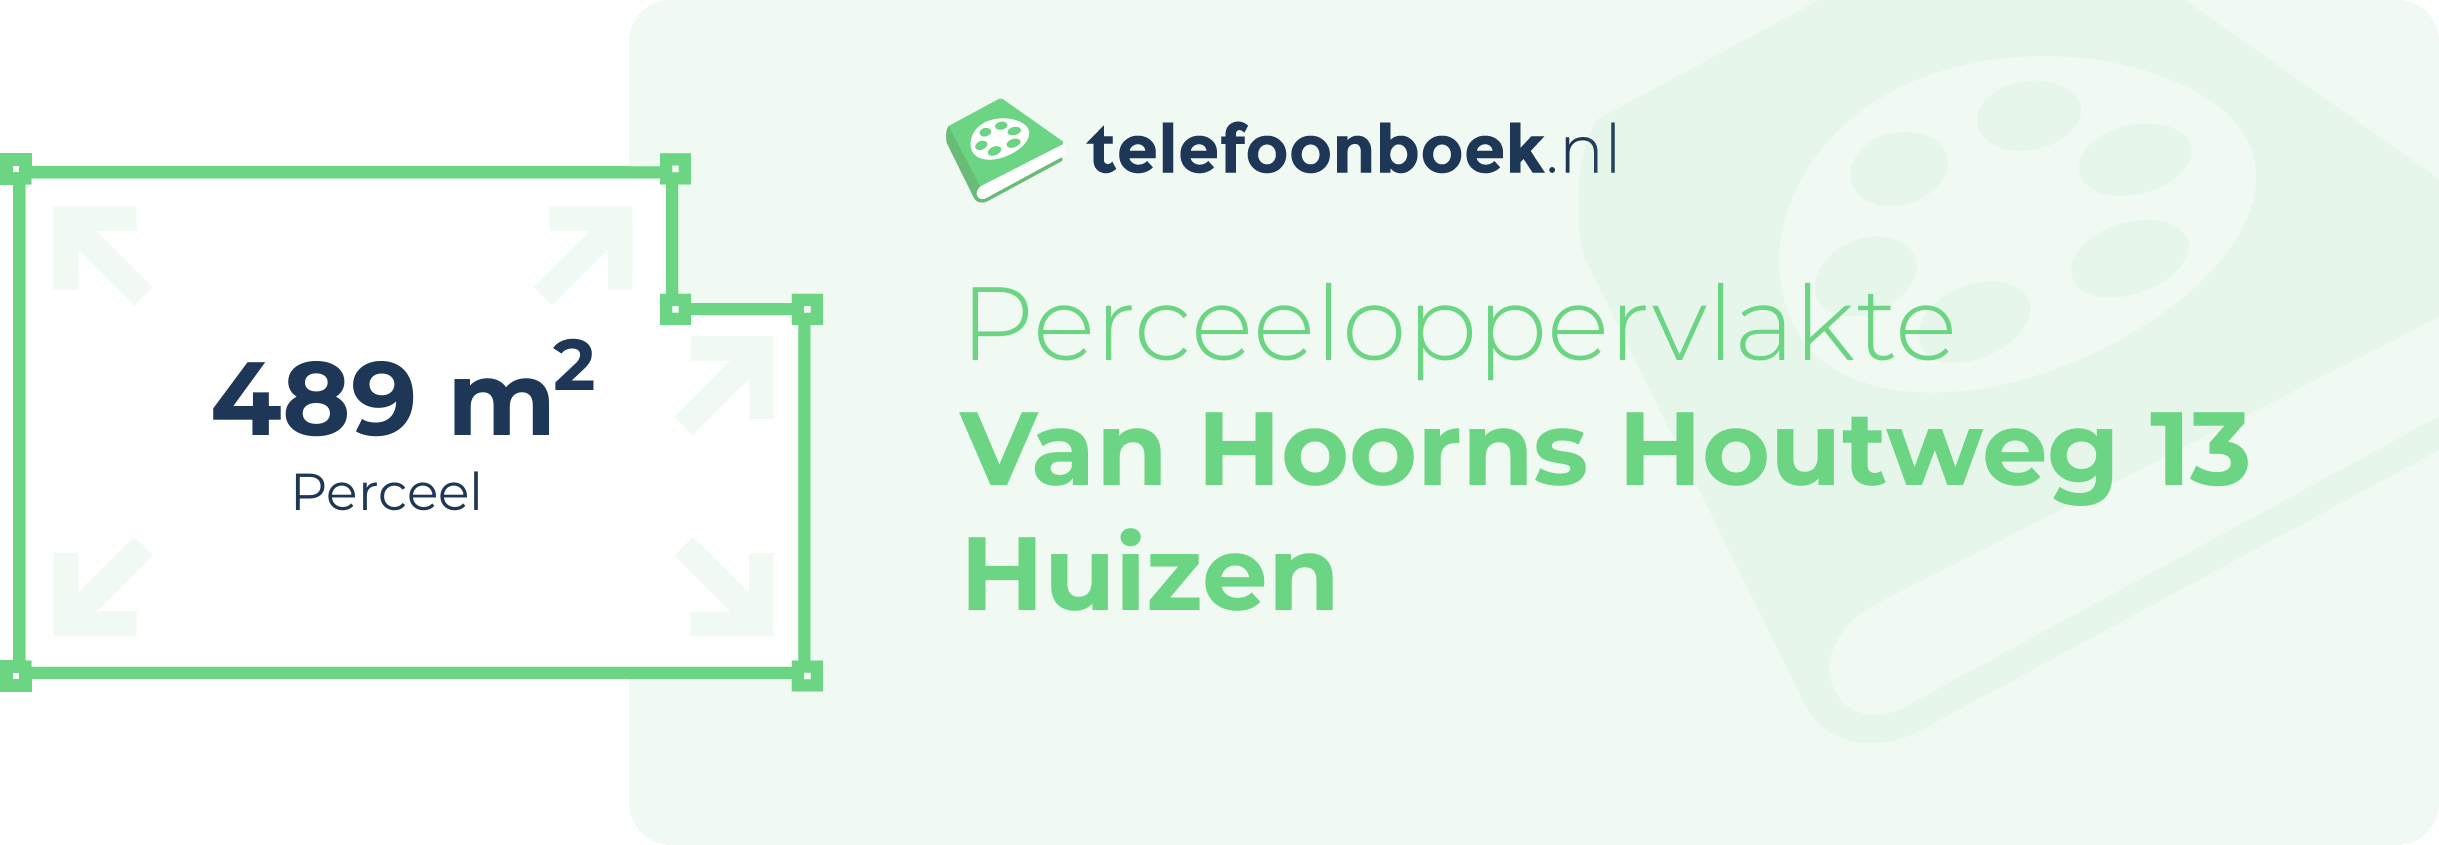 Perceeloppervlakte Van Hoorns Houtweg 13 Huizen